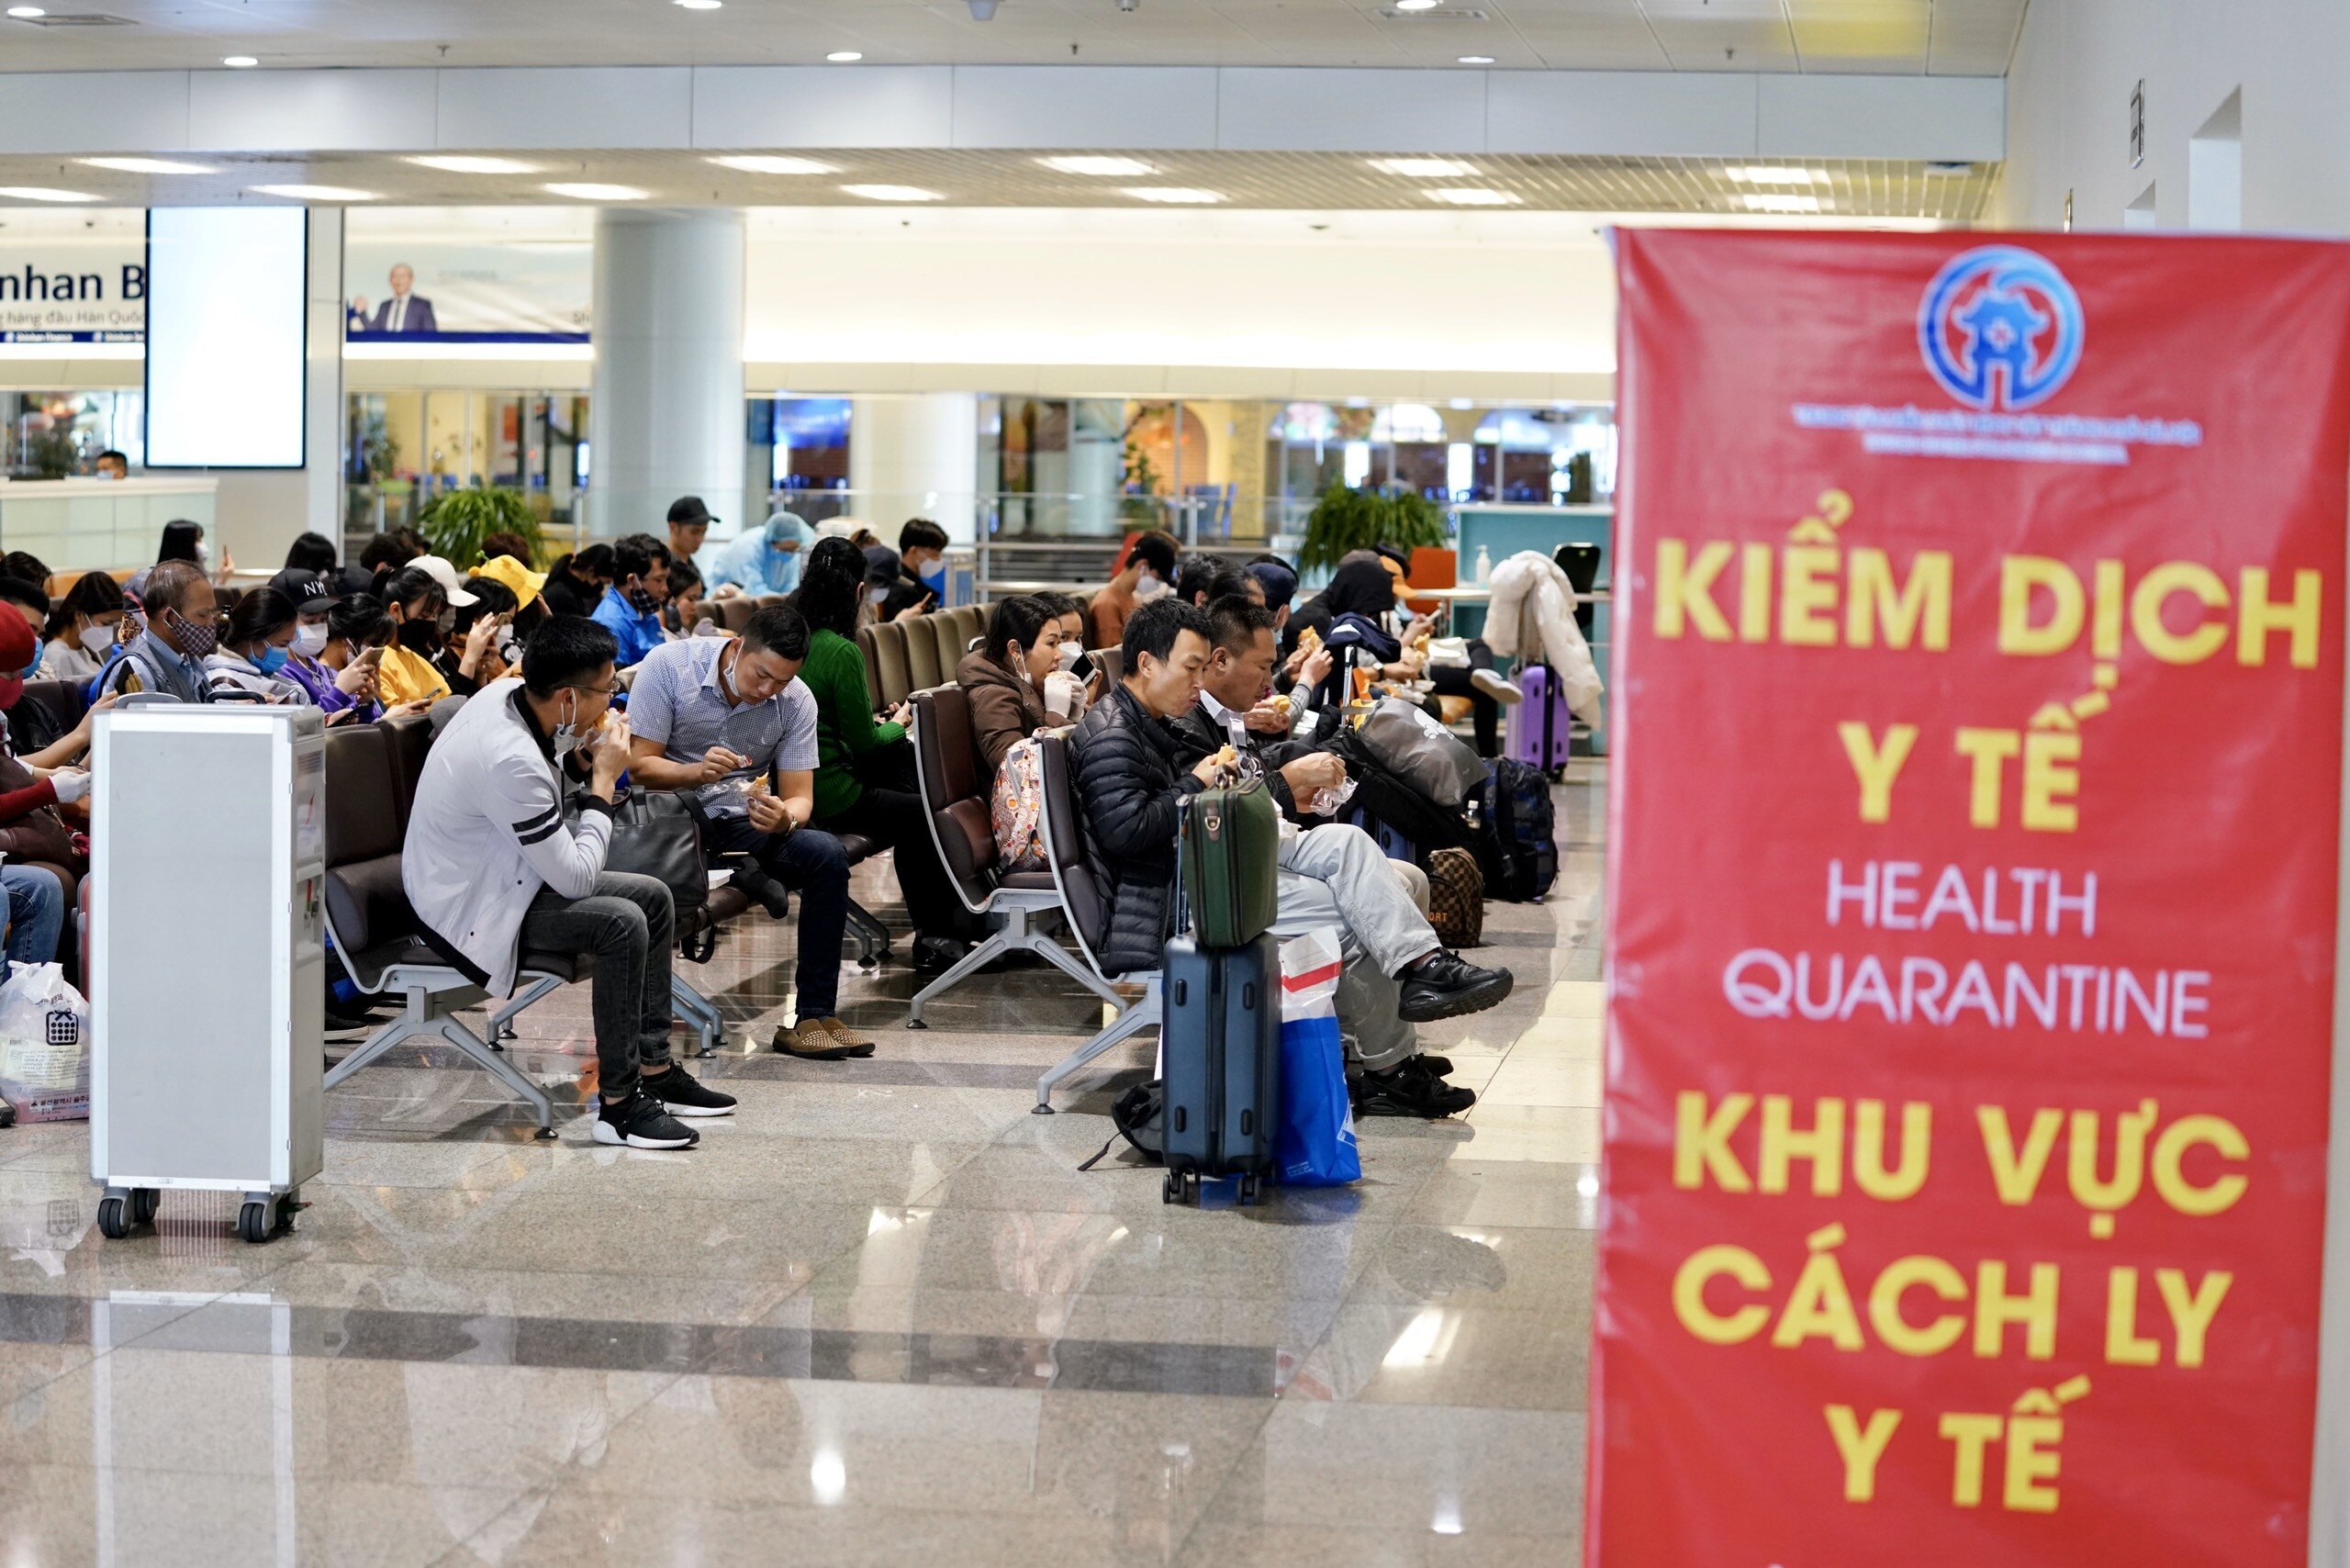 Hành khách về sân bay của Việt Nam từ các vùng dịch, chủ yếu là Hàn Quốc trong những ngày vừa qua&nbsp;. (Ảnh: Báo Giao thông)